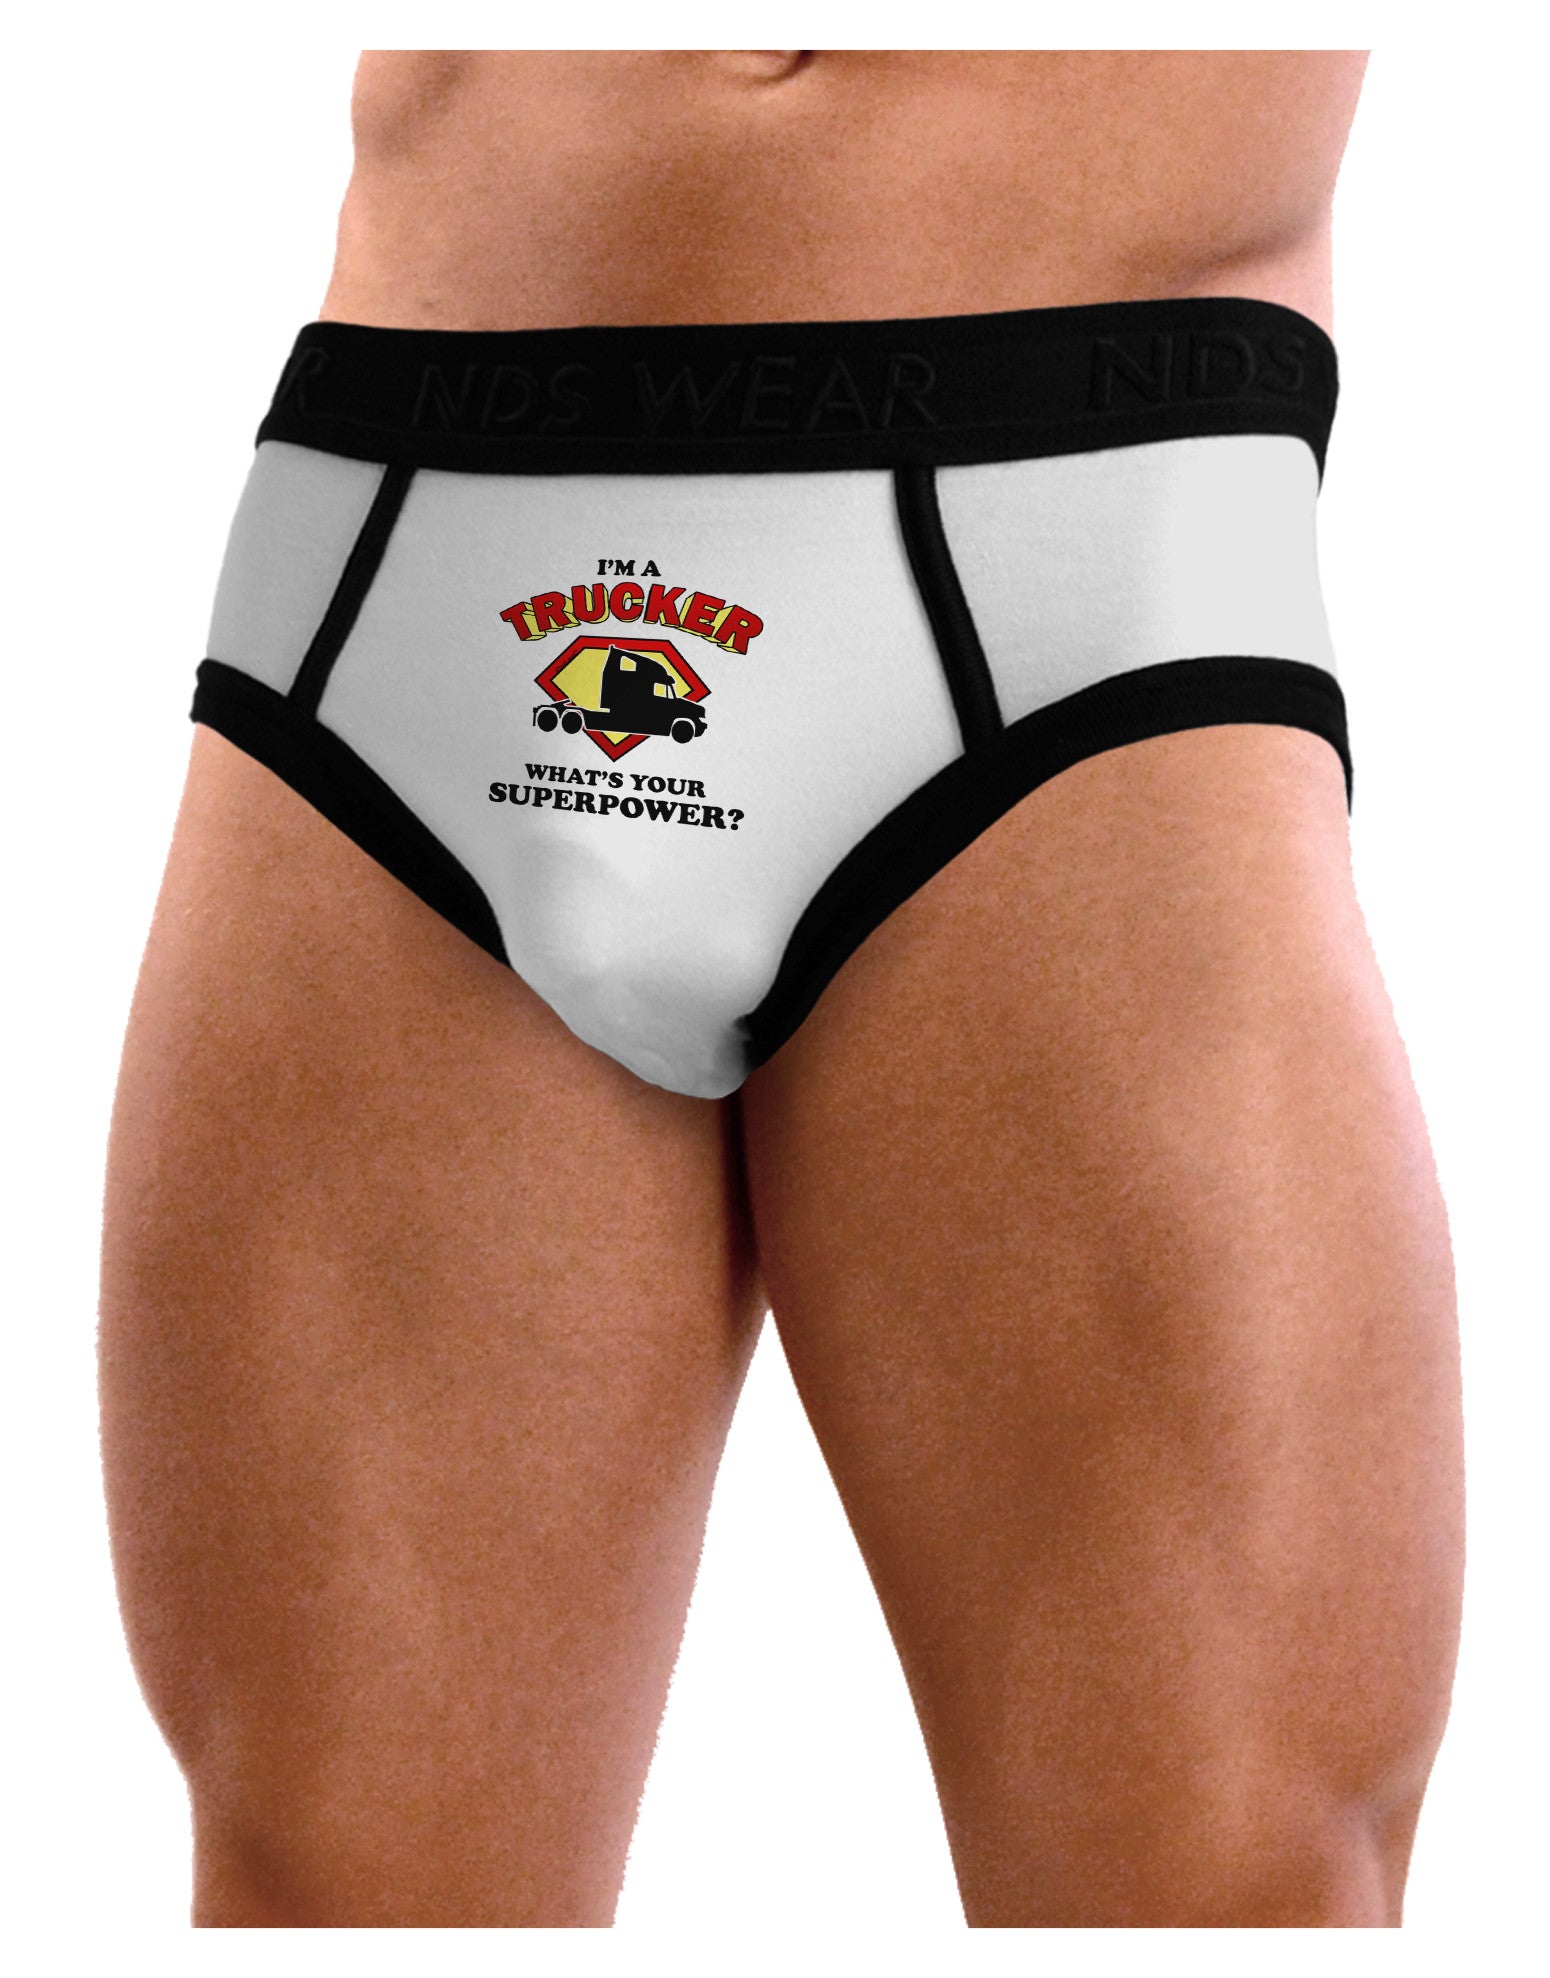 TooLoud Trucker - Superpower Mens Boxer Brief Underwear